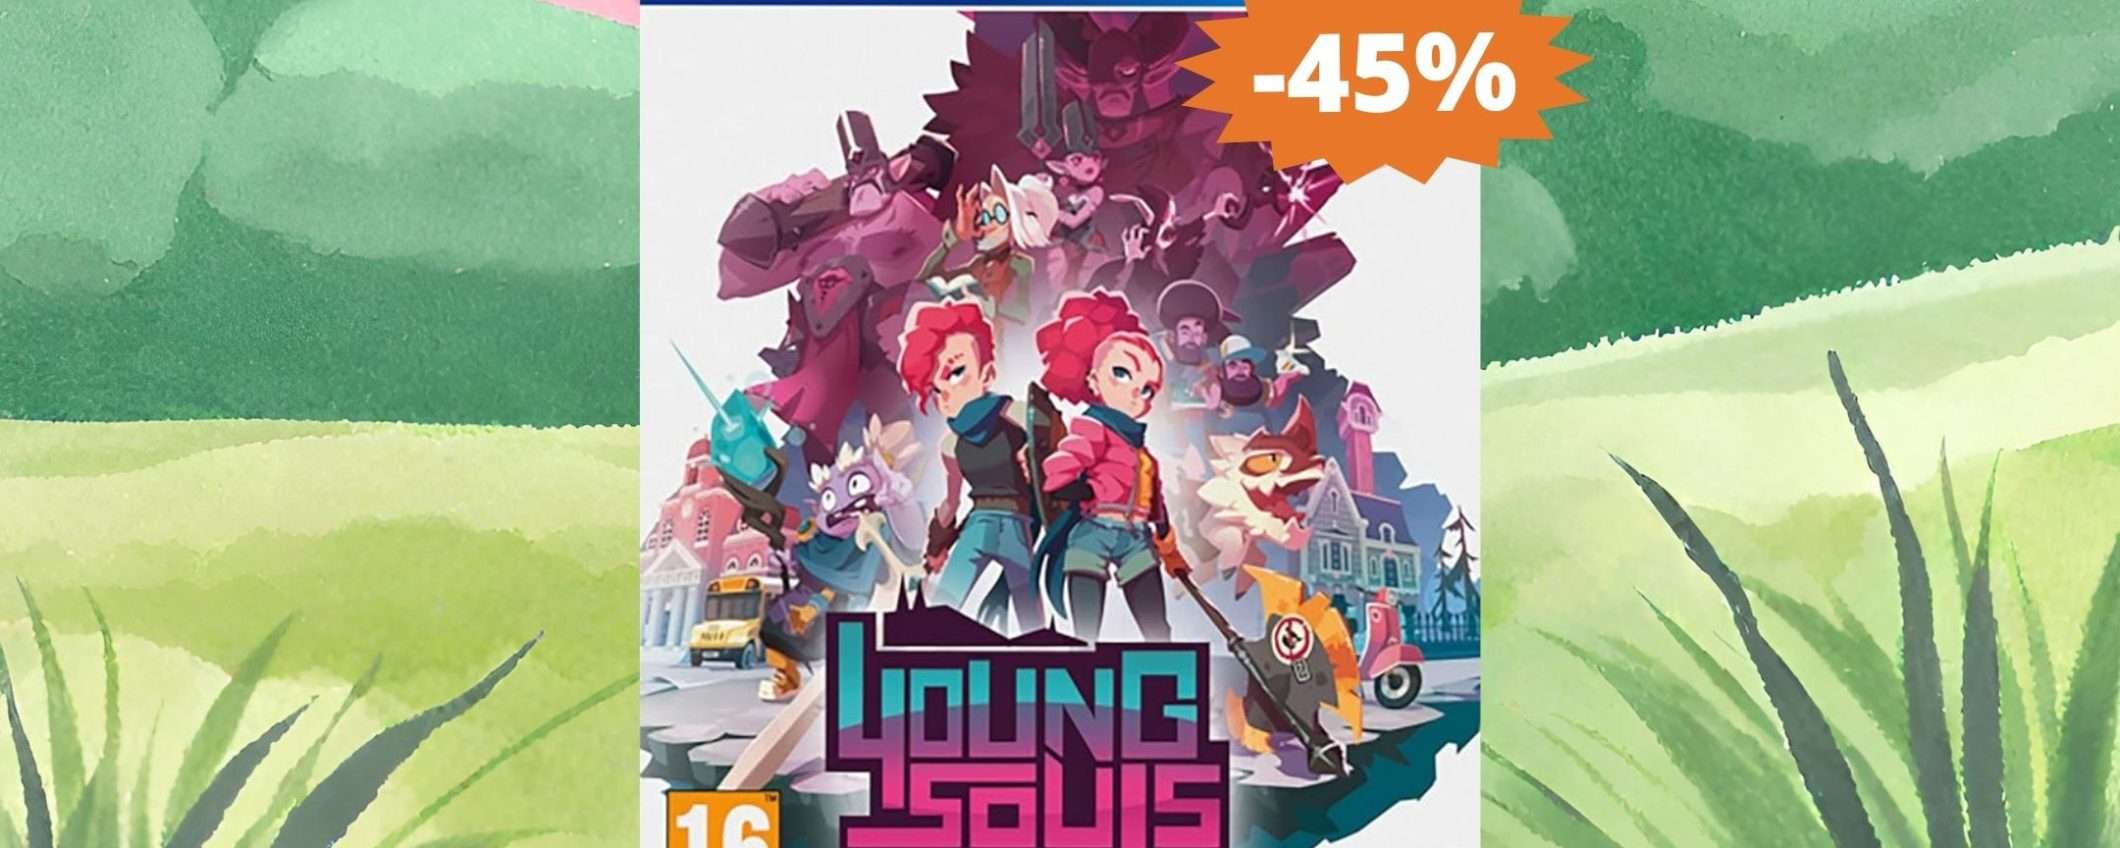 Young Souls per PS4: un'avventura stravagante (-45%)